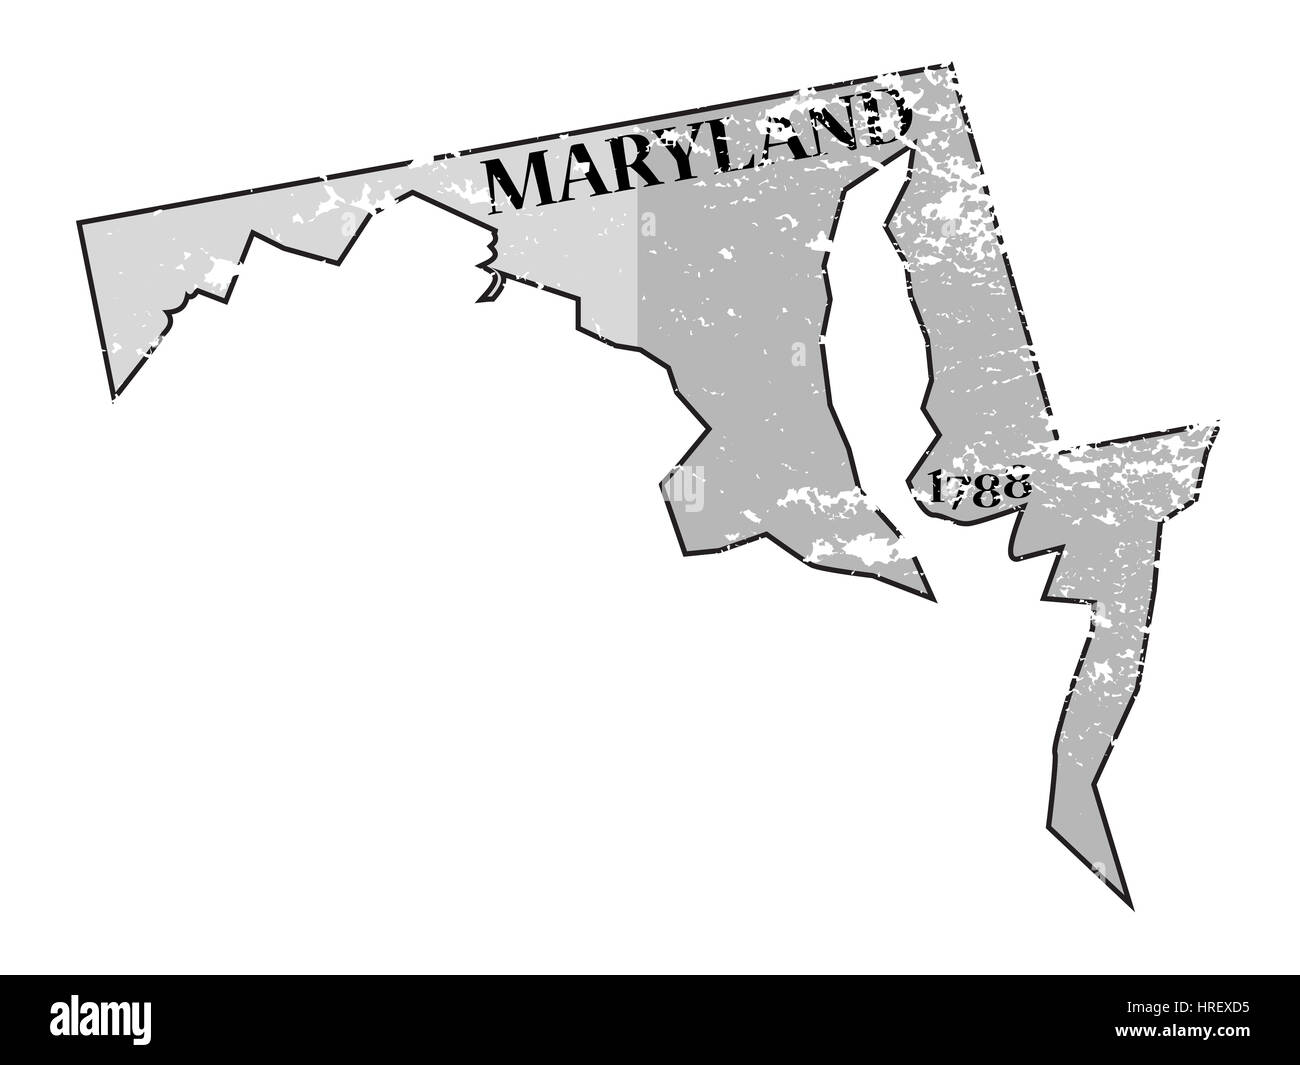 Un grunged Maryland State contours avec la date de l'état isolé sur fond blanc Banque D'Images